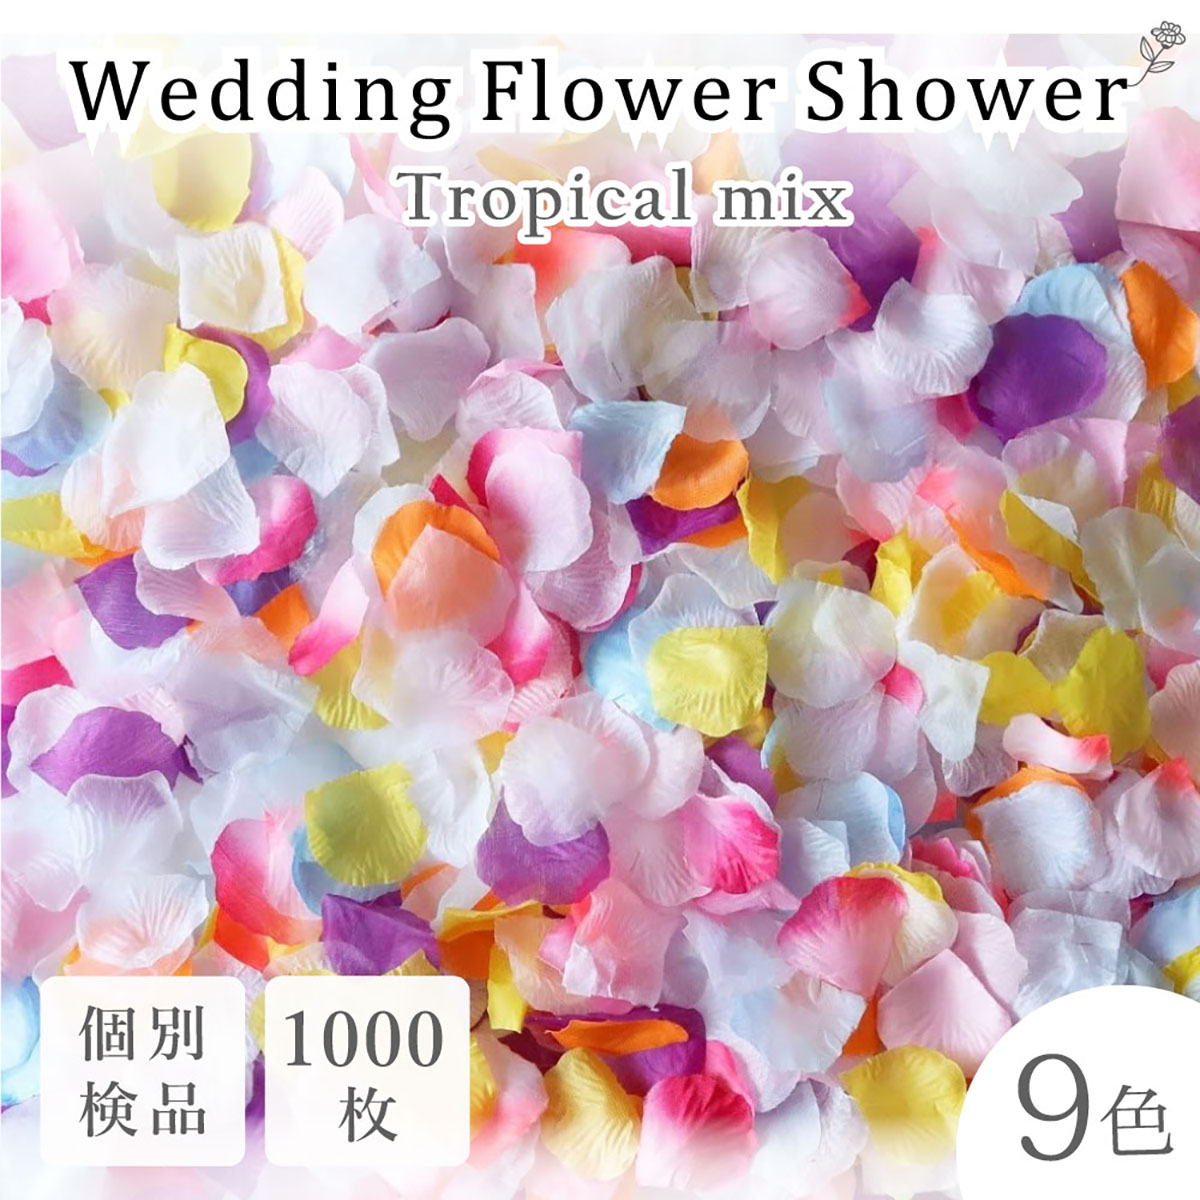 お手軽価格で贈りやすい 4色セット フラワーシャワー 1000枚 花びら